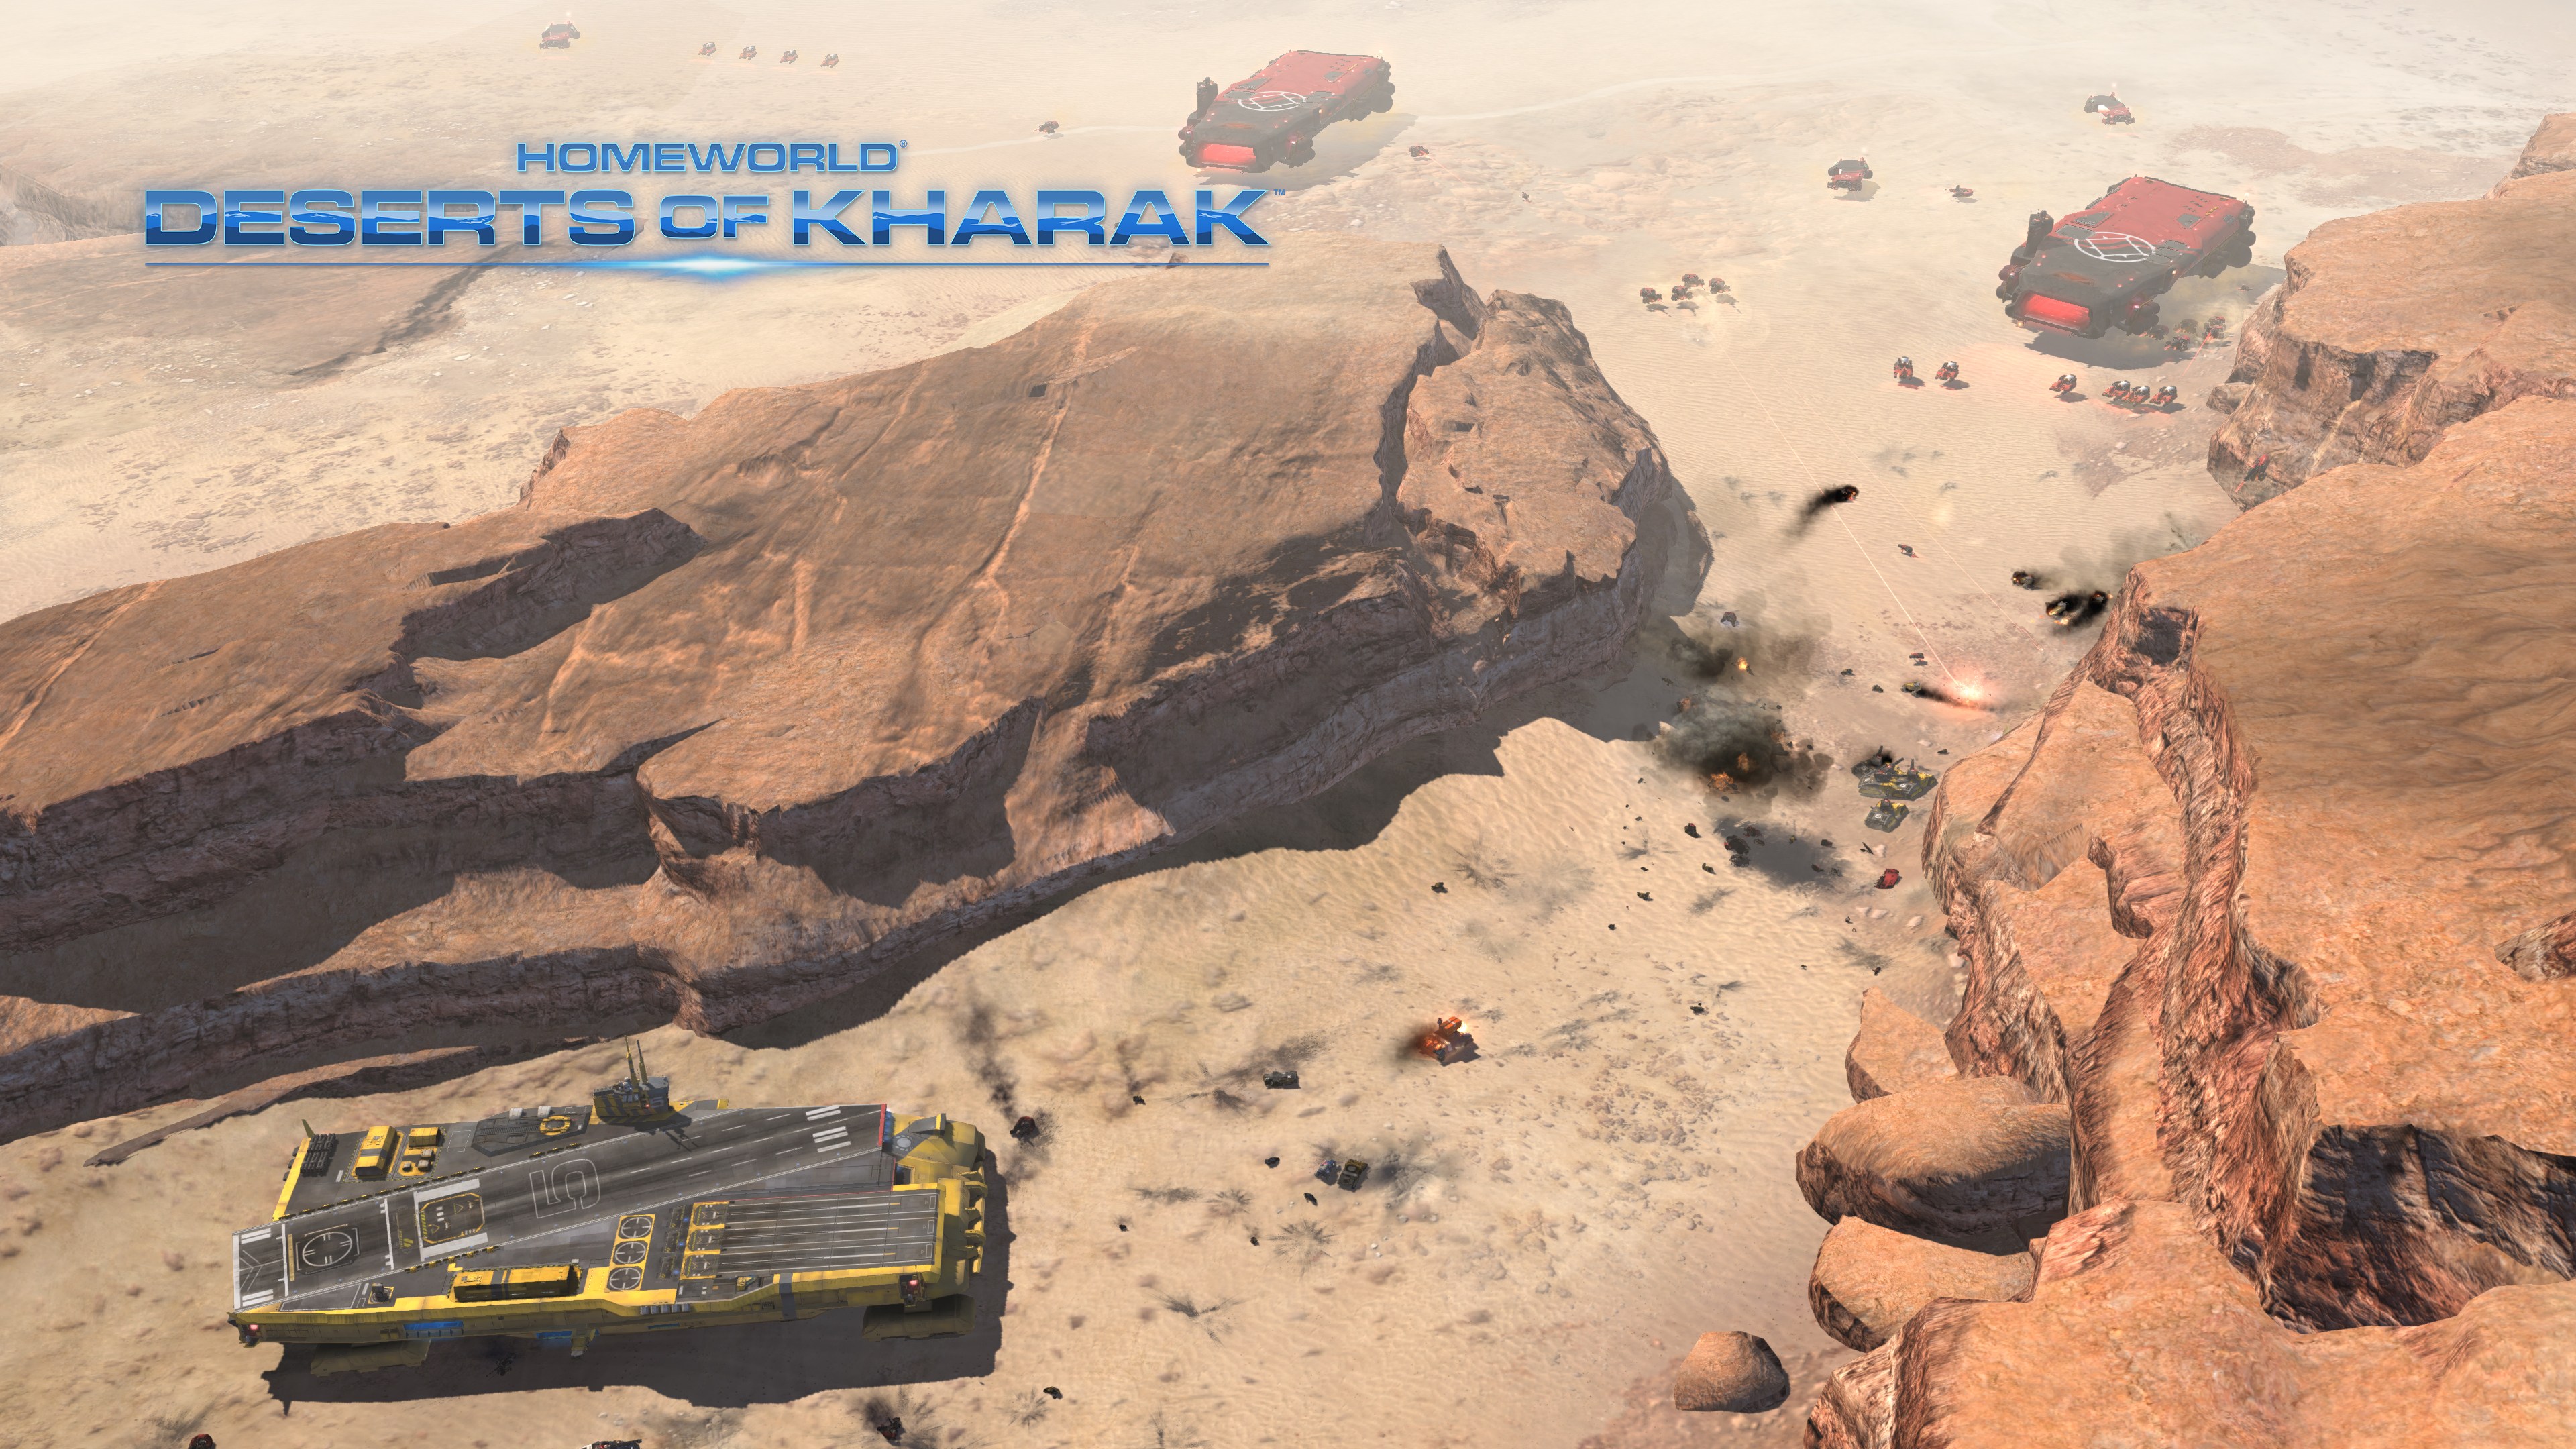 Video Game Homeworld: Deserts of Kharak 4k Ultra HD Wallpaper